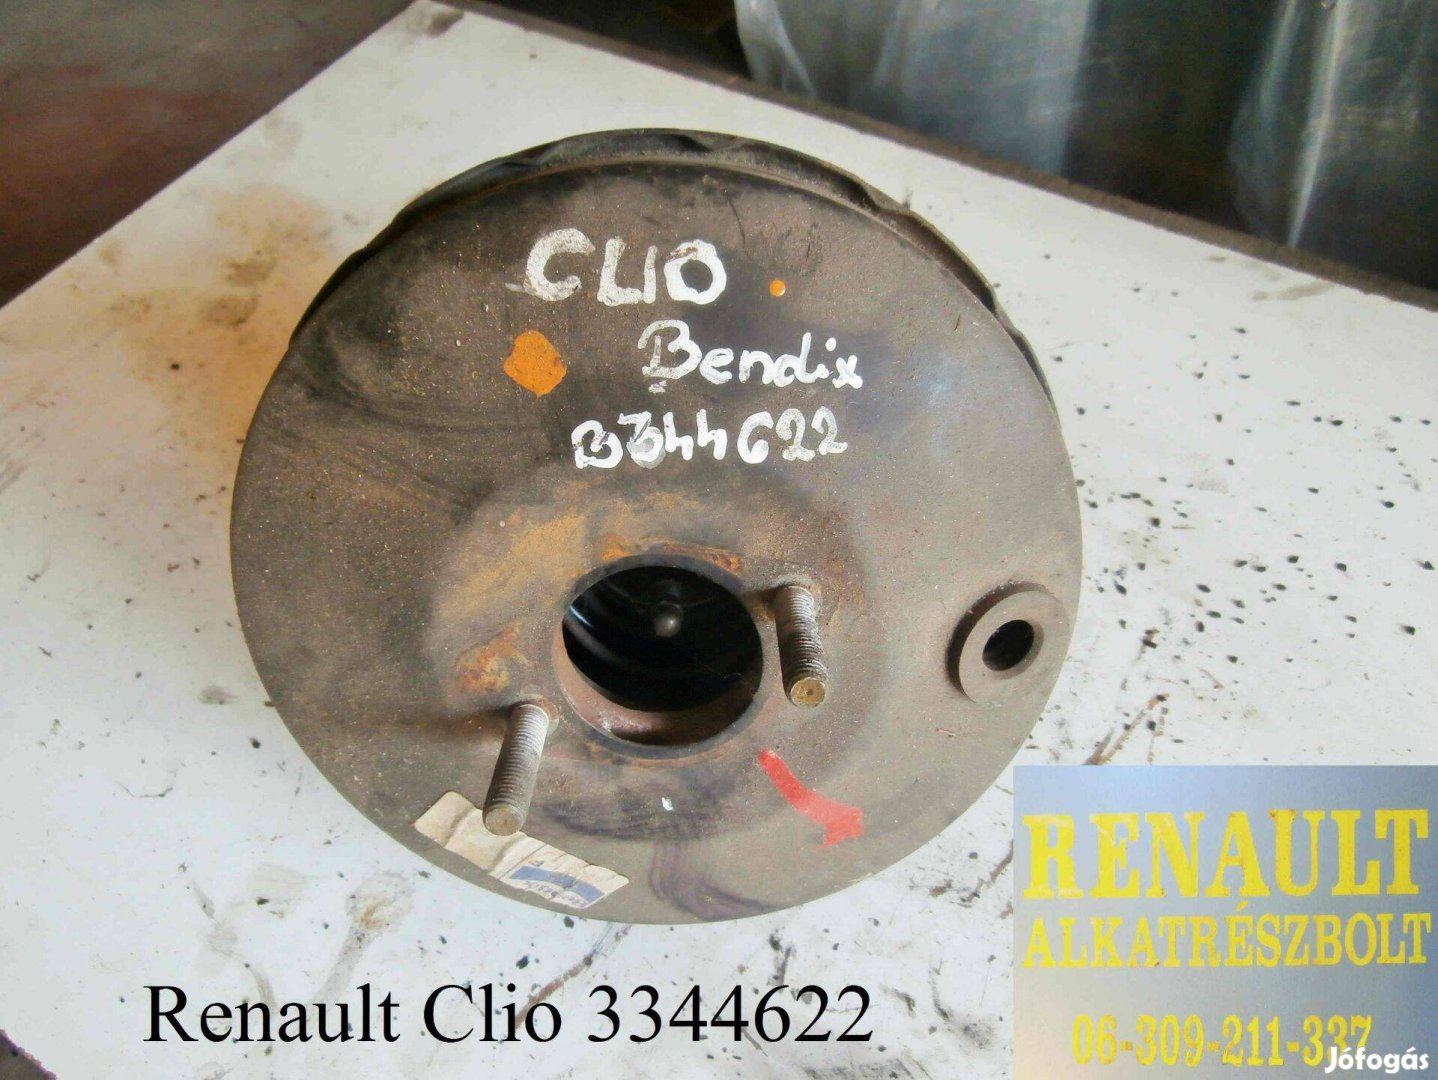 Renault Clio 3344622 Fék-szervódob